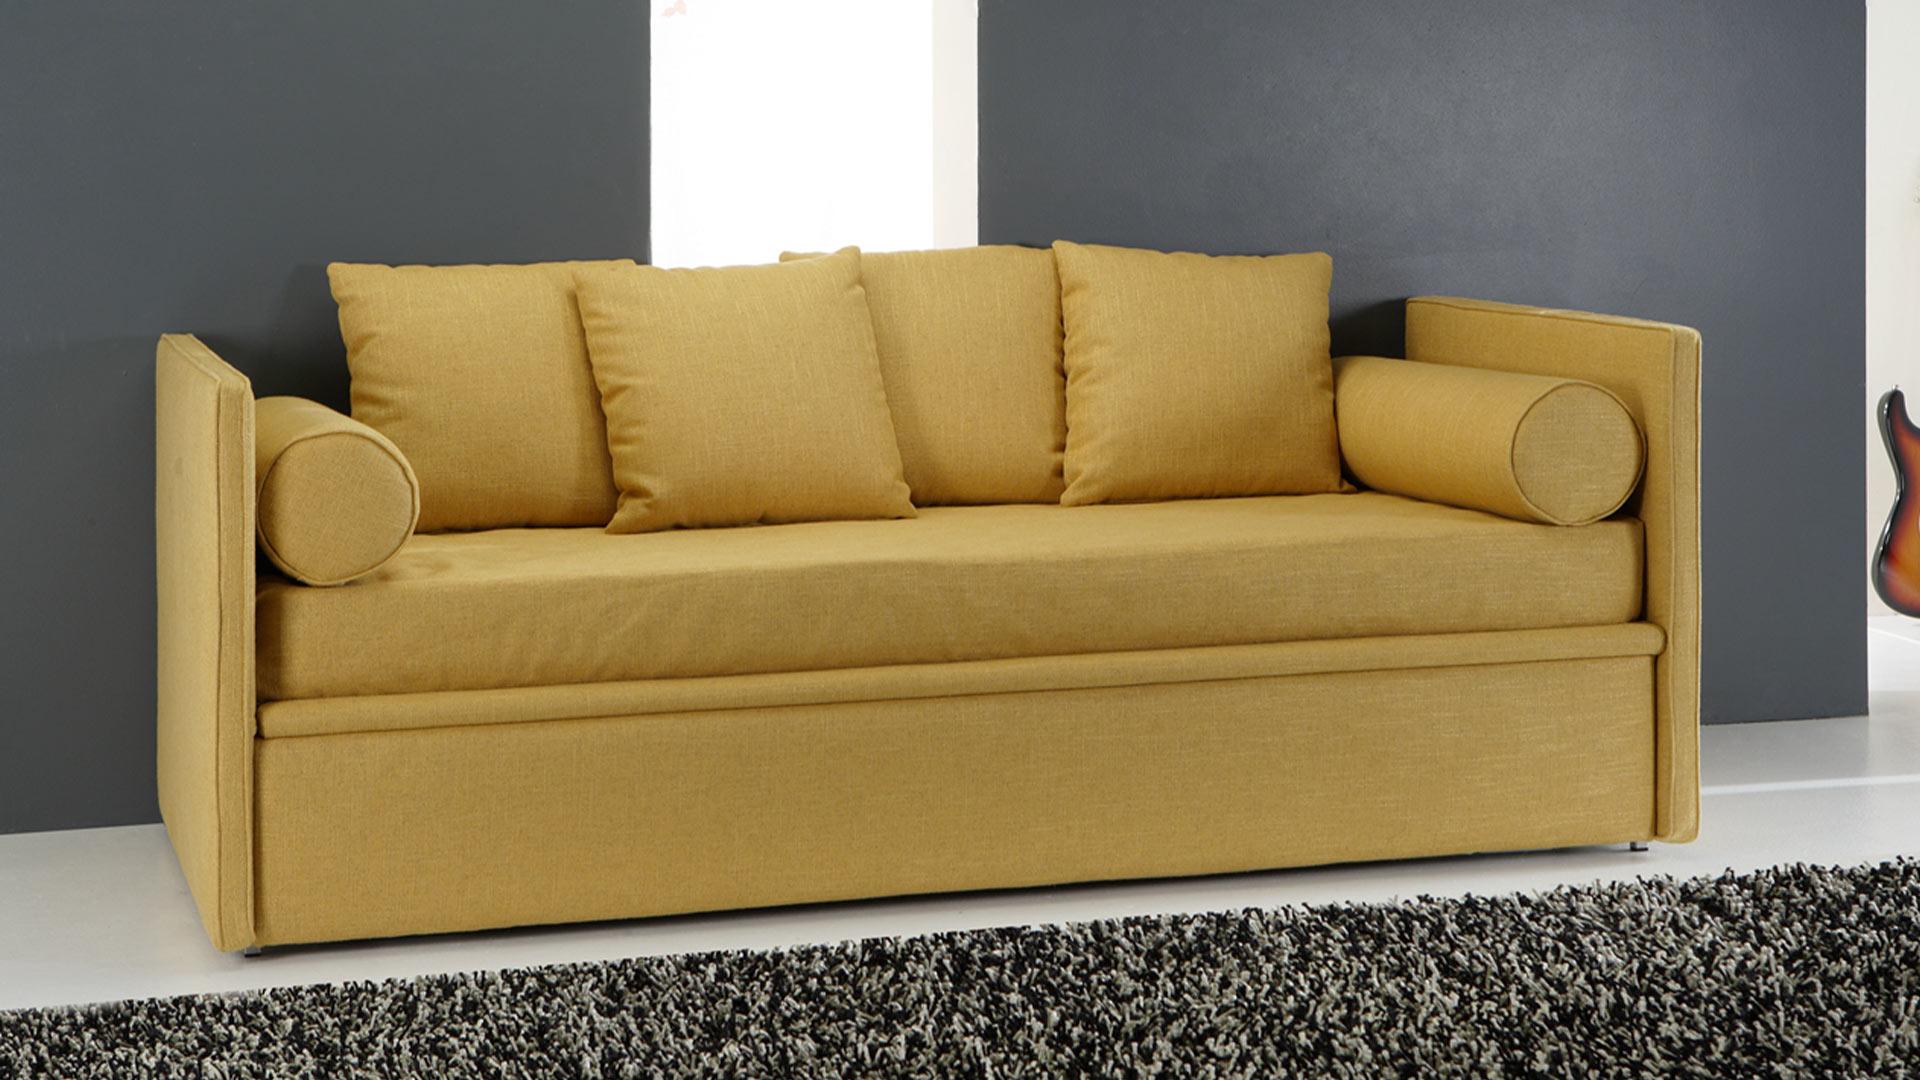 Sofa bed Parma